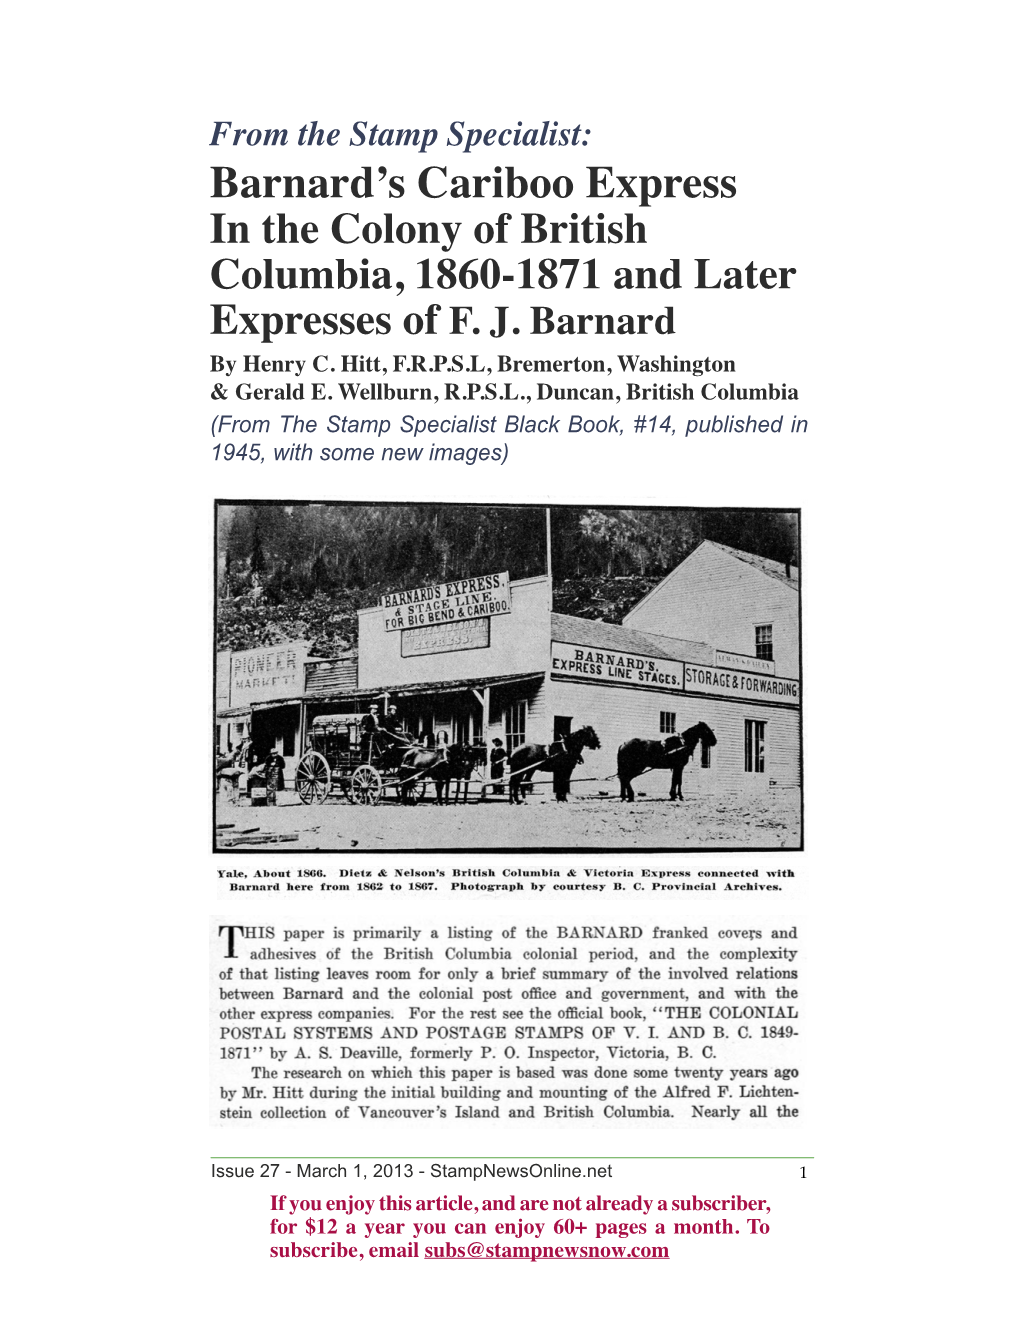 Barnard's Cariboo Express